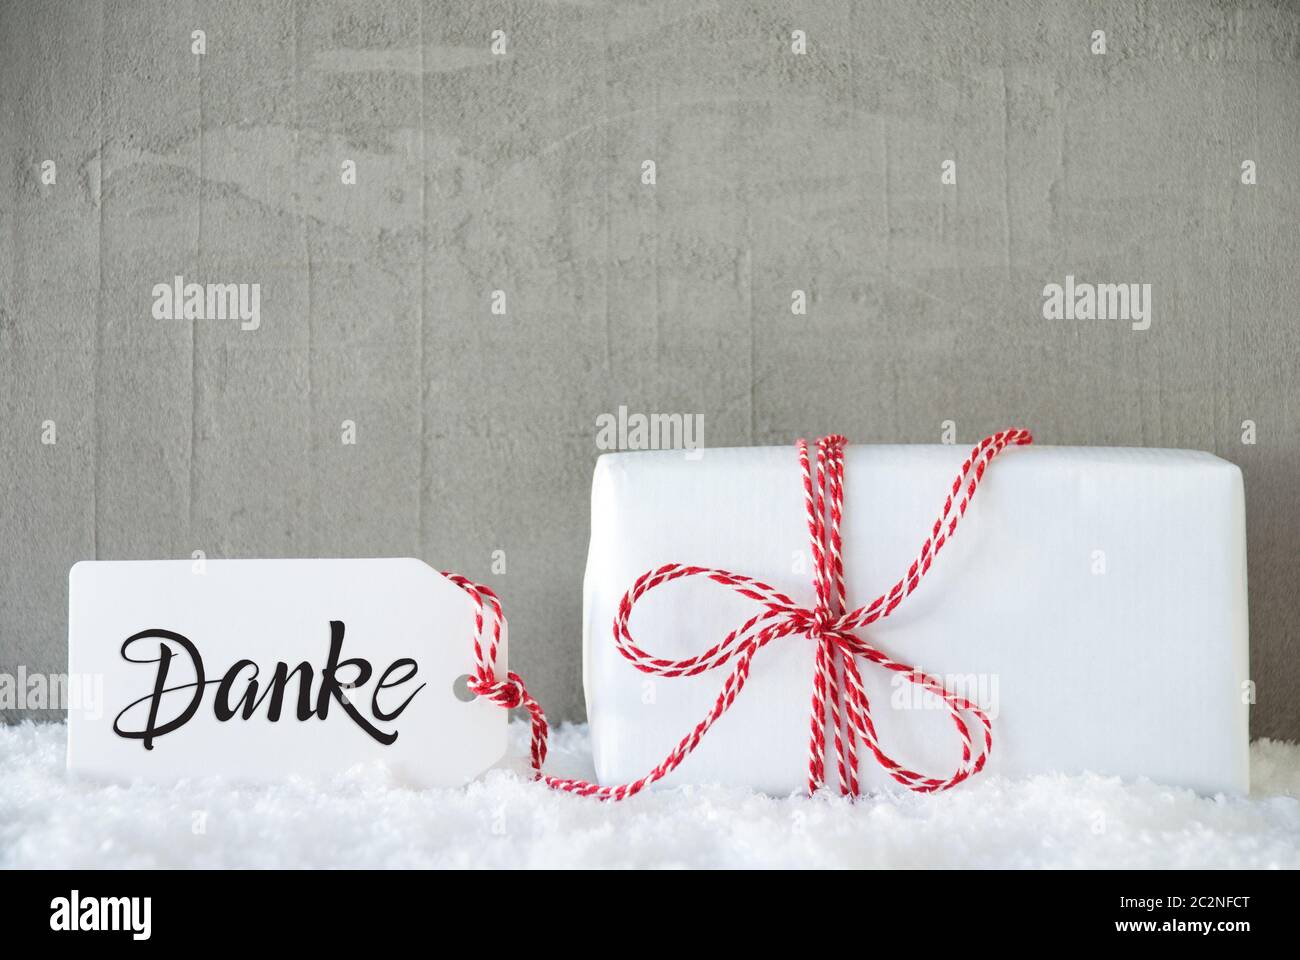 Etikett mit Deutschen Kalligraphie Danke, Danke. Eine weiße Geschenk mit roter Schleife. Grauer Beton Hintergrund mit Schnee Stockfoto